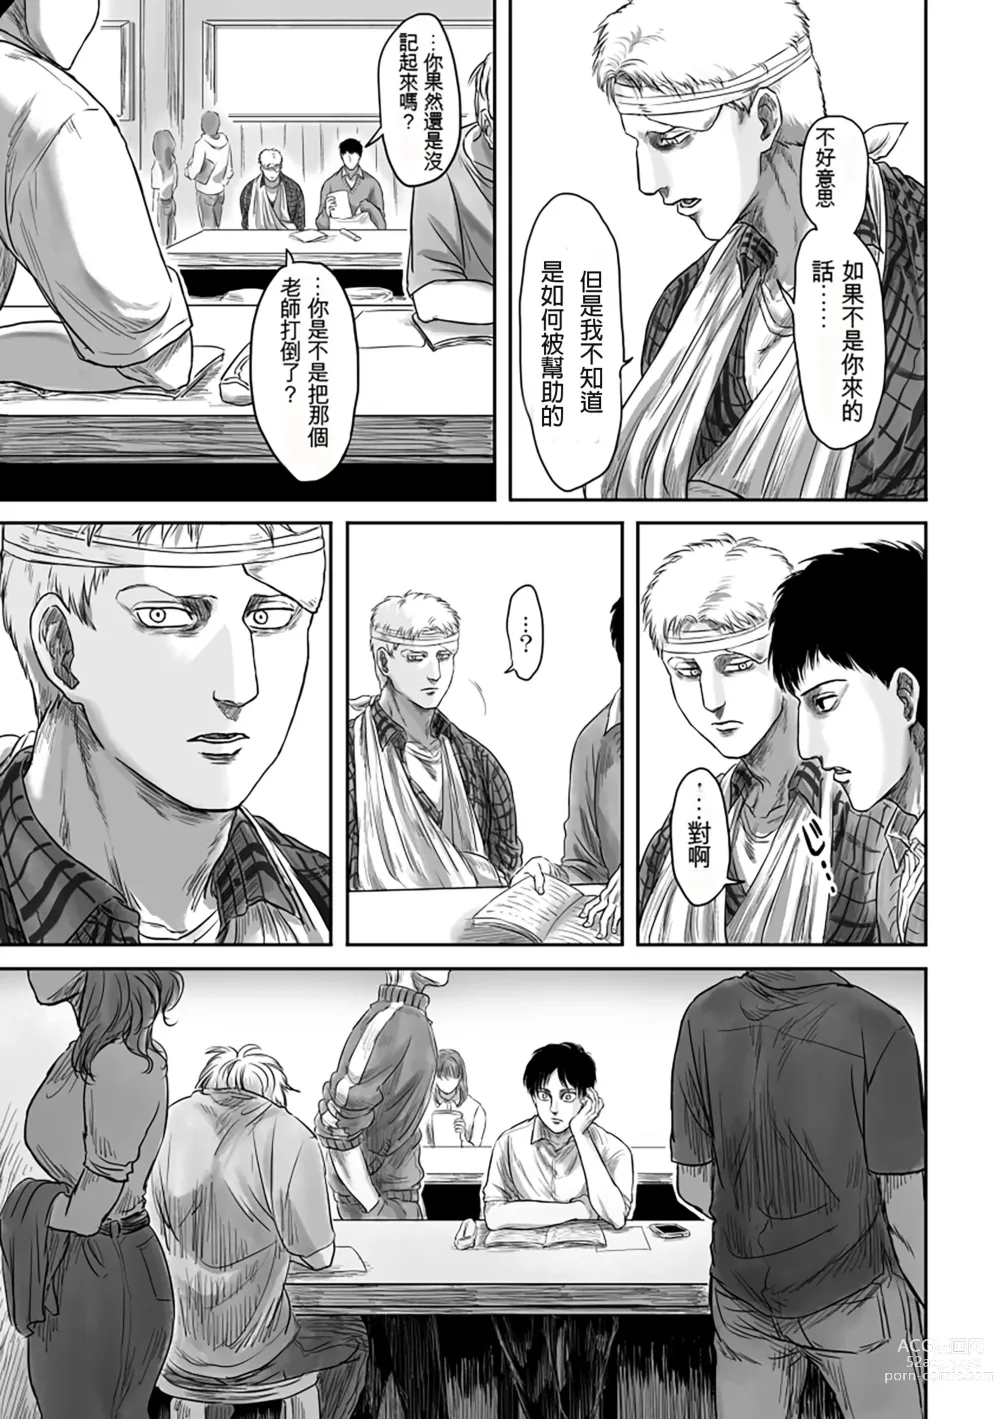 Page 61 of doujinshi GAZE